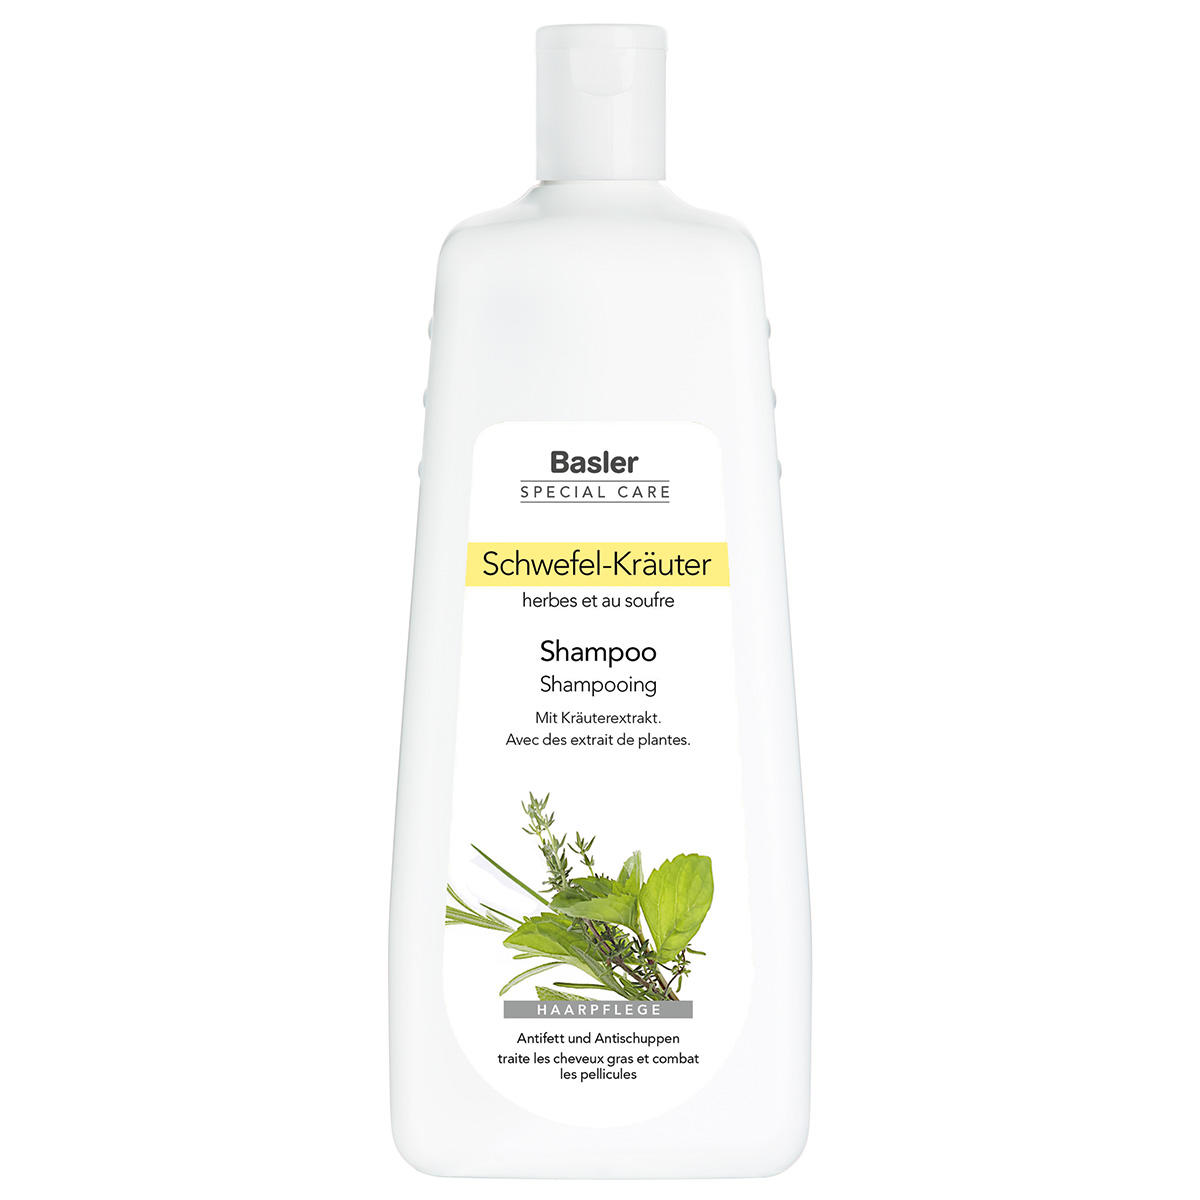 Basler Sulfur herbs shampoo Economy bottle 1 liter - 1